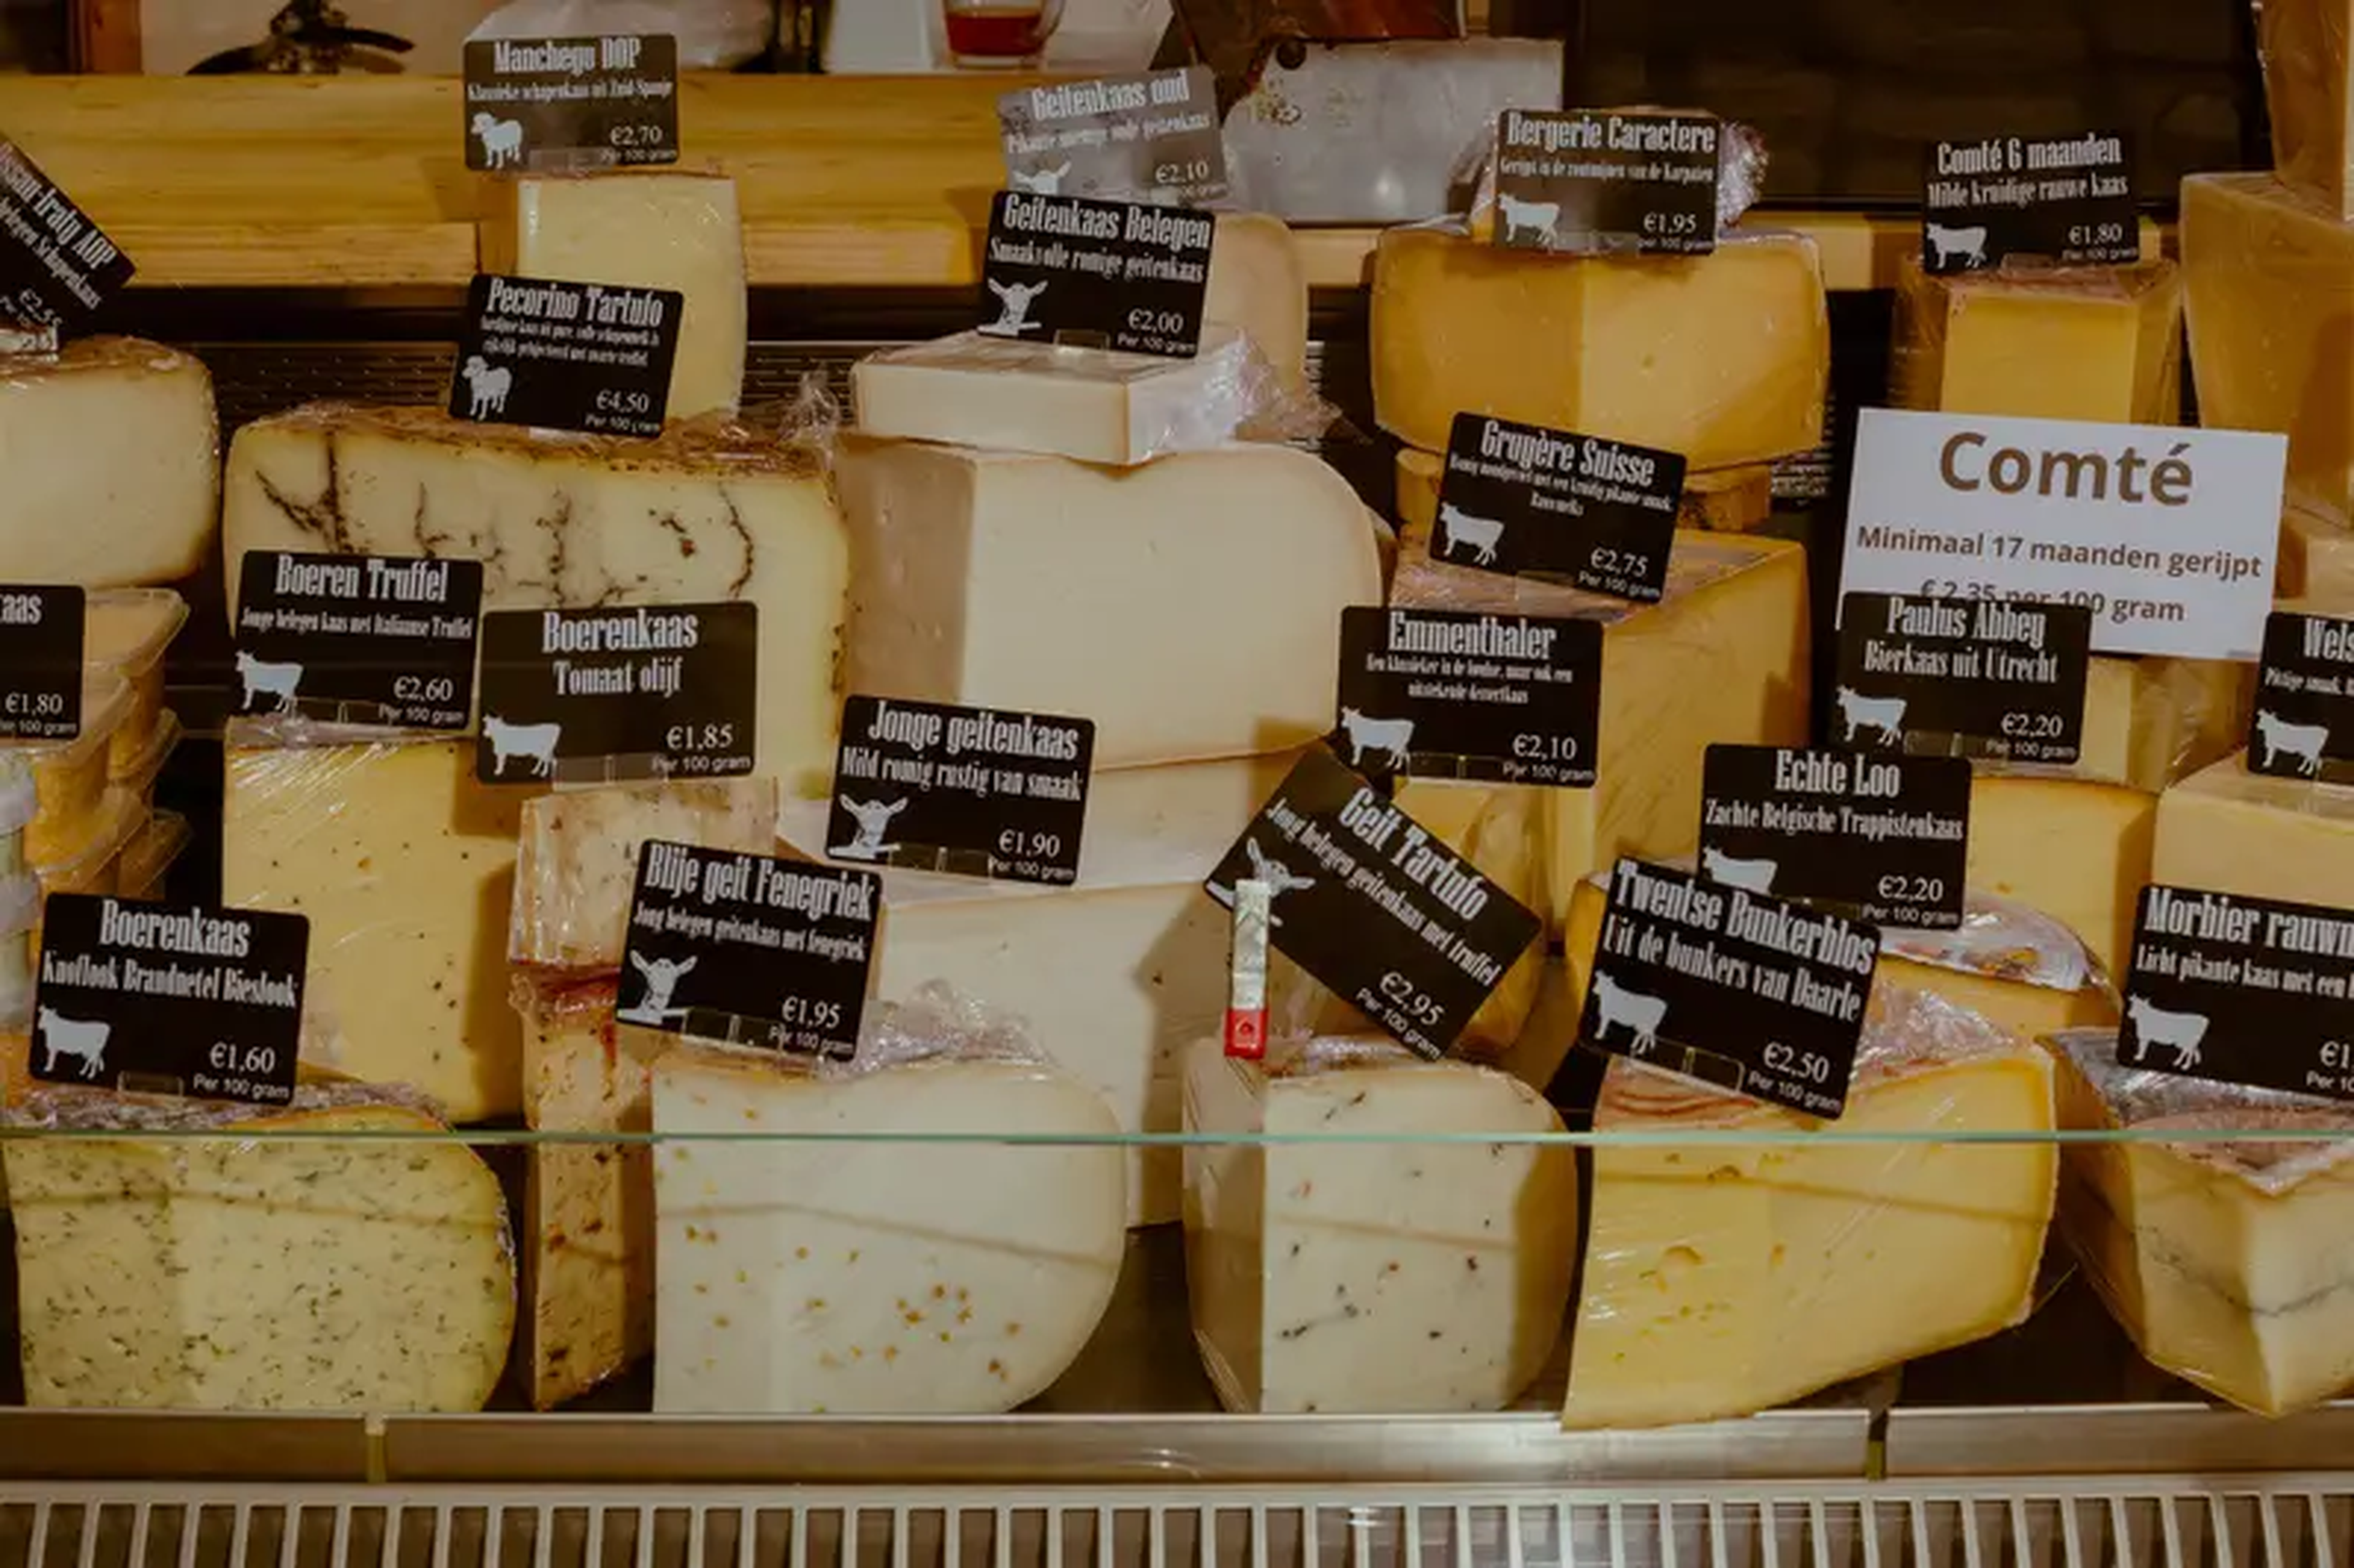 Cuñas de diferentes tipos de queso en Werelde kaas van Klaas, un puesto en el mercado de Ámsterdam.